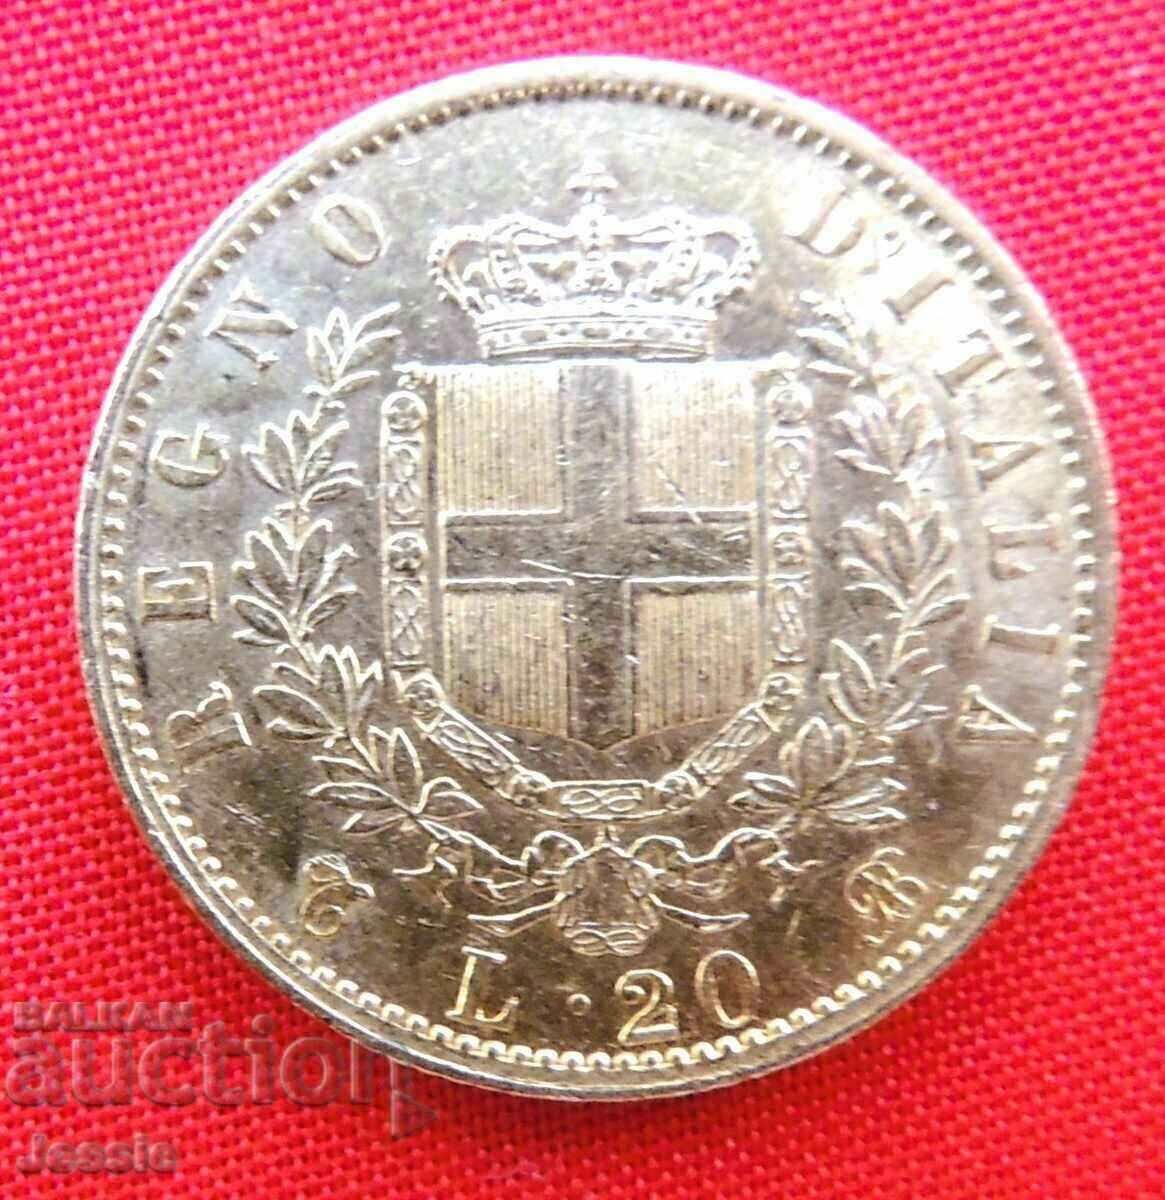 20 lire 1863 Italia (20 lire Italia) (aur)